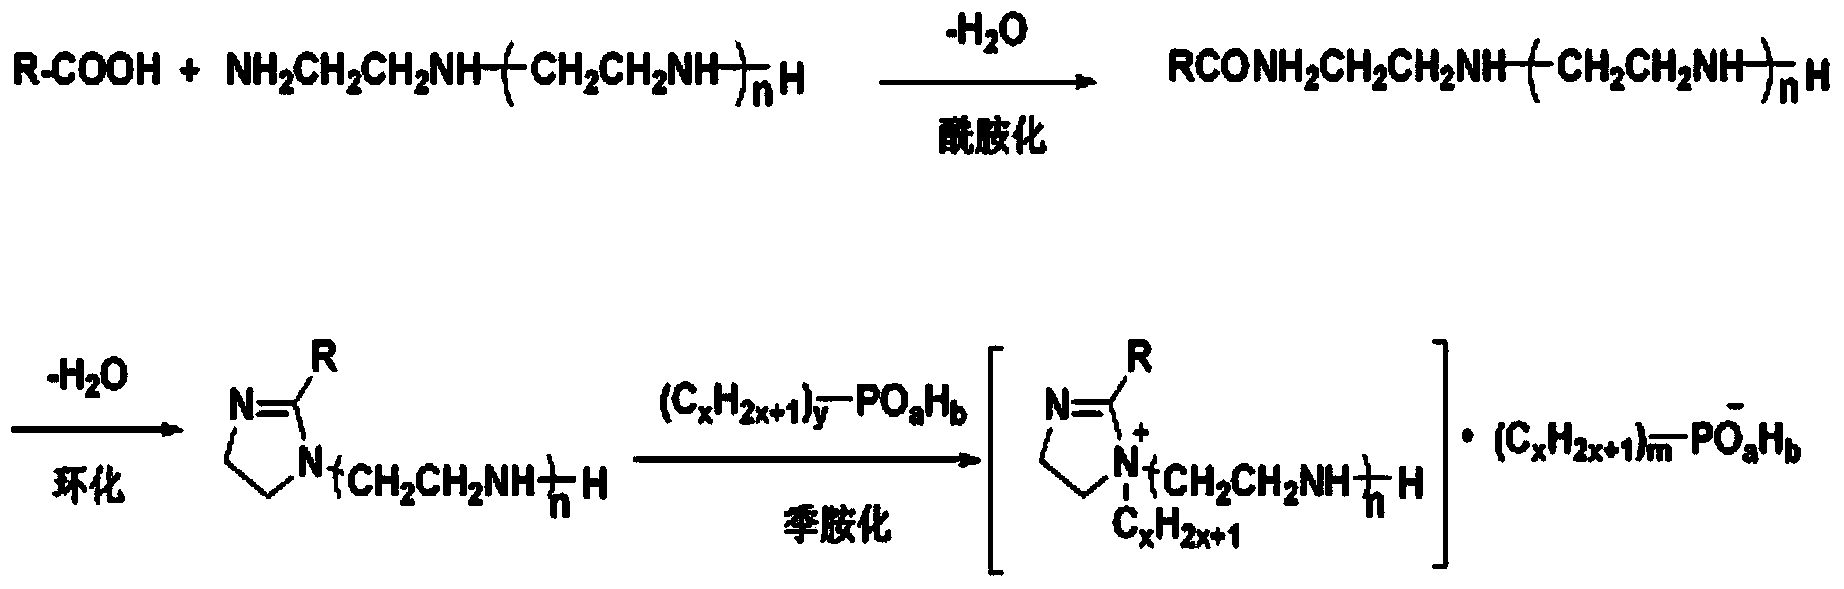 Method for synthesizing water-soluble imidazoline quaternary ammonium salt corrosion inhibitor